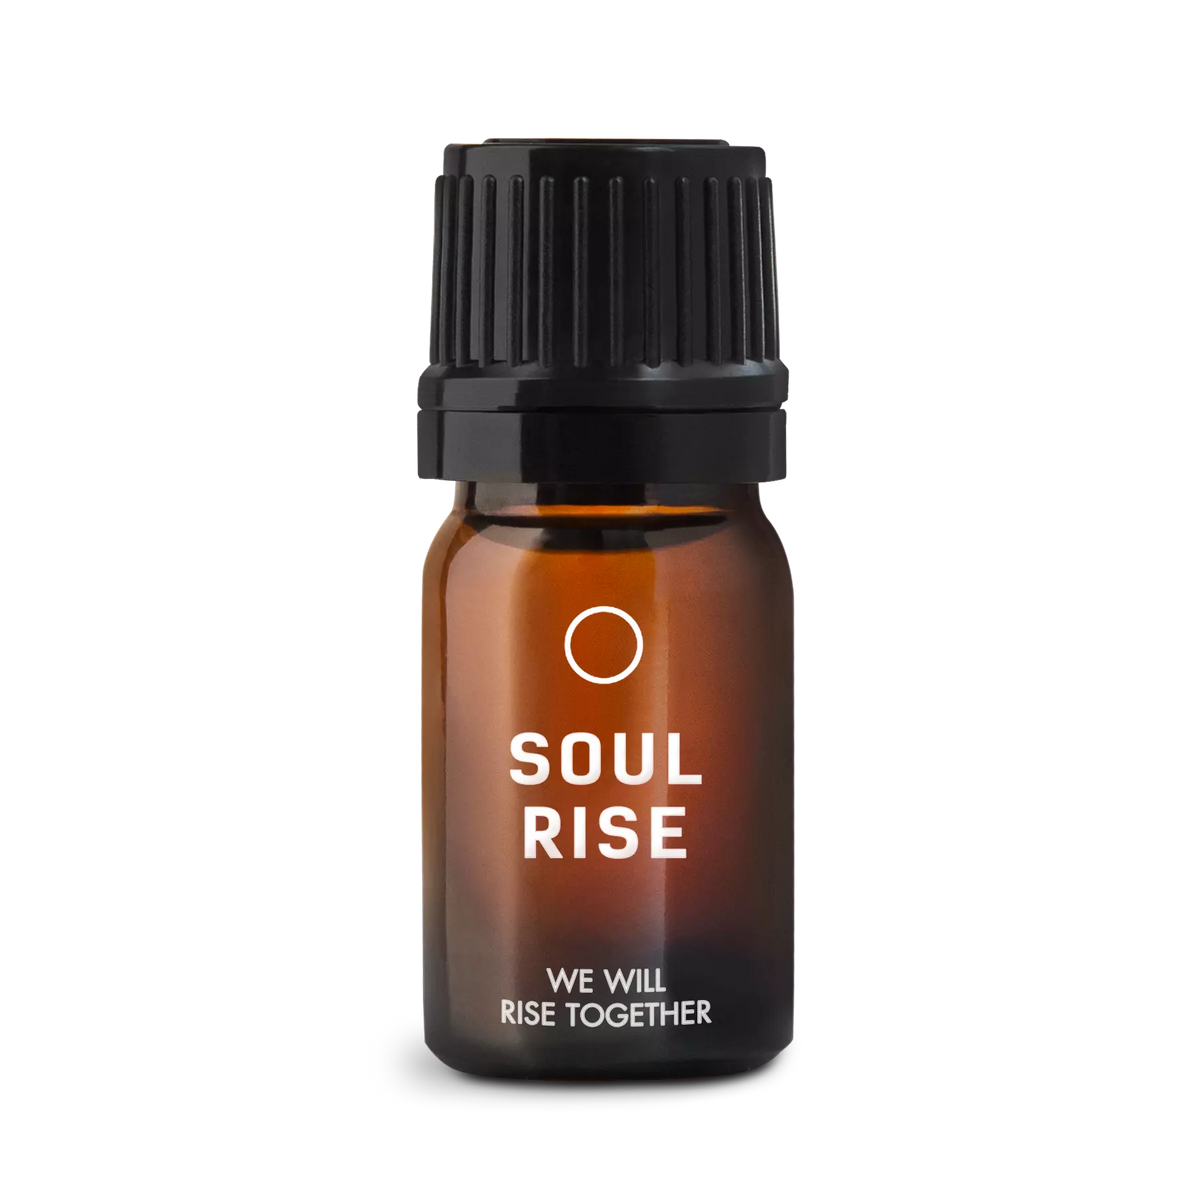 Soul Rise Oils. Aceites esenciales puros. De origen natural y de orgánico. Gotero de 5ml con dosificador y vidrio ámbar para protegerlo de la luz.